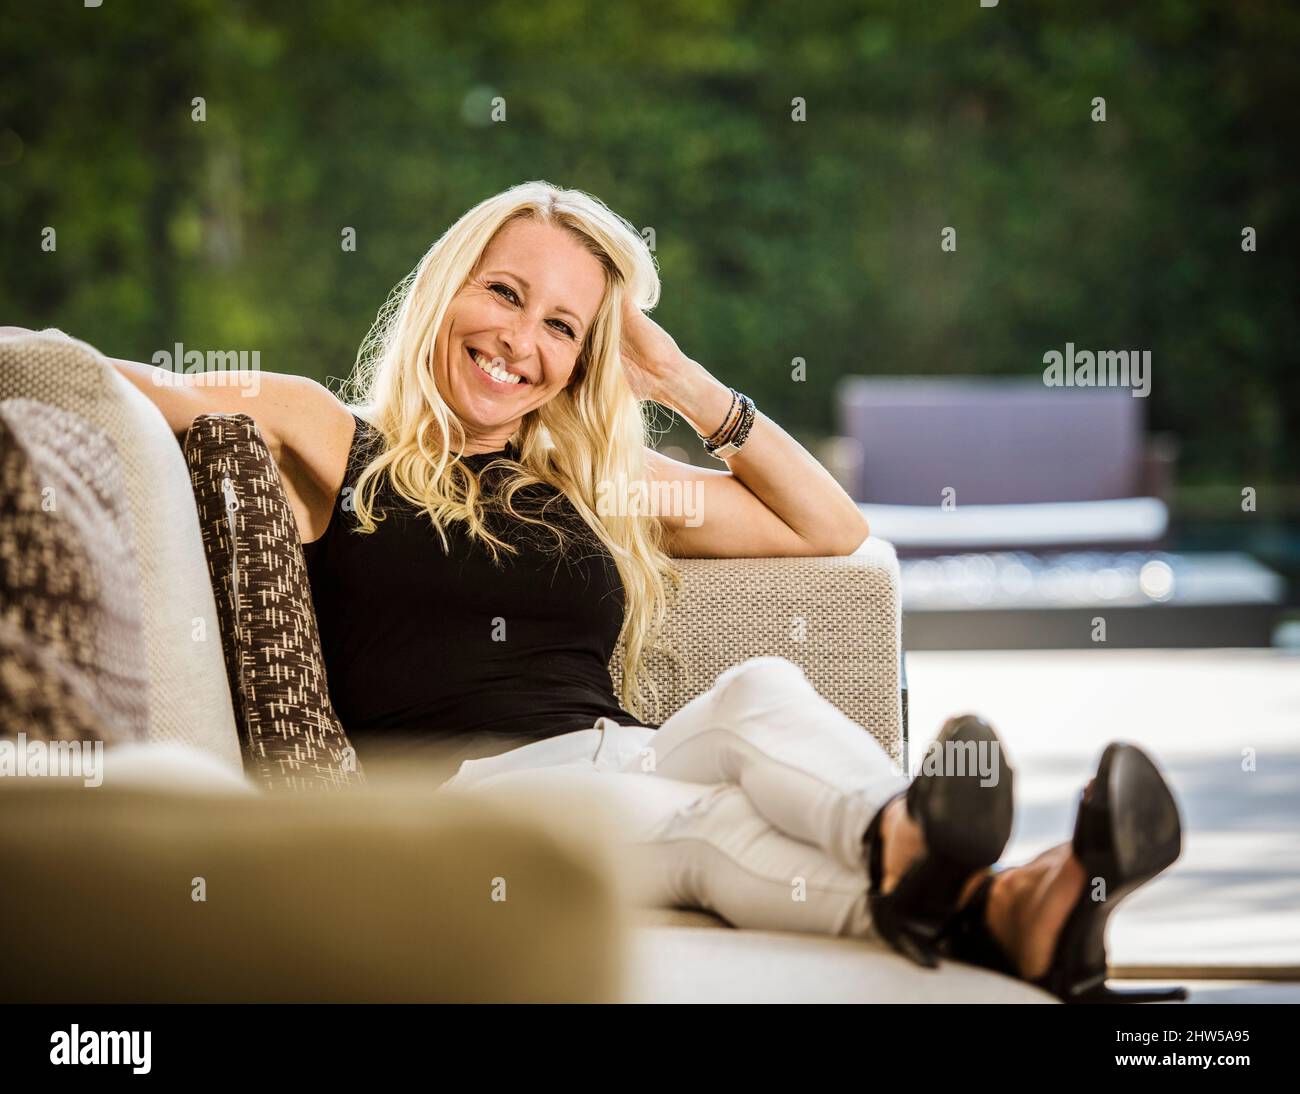 Porträt einer lächelnden blonden Frau, die auf dem Sofa sitzt Stockfoto